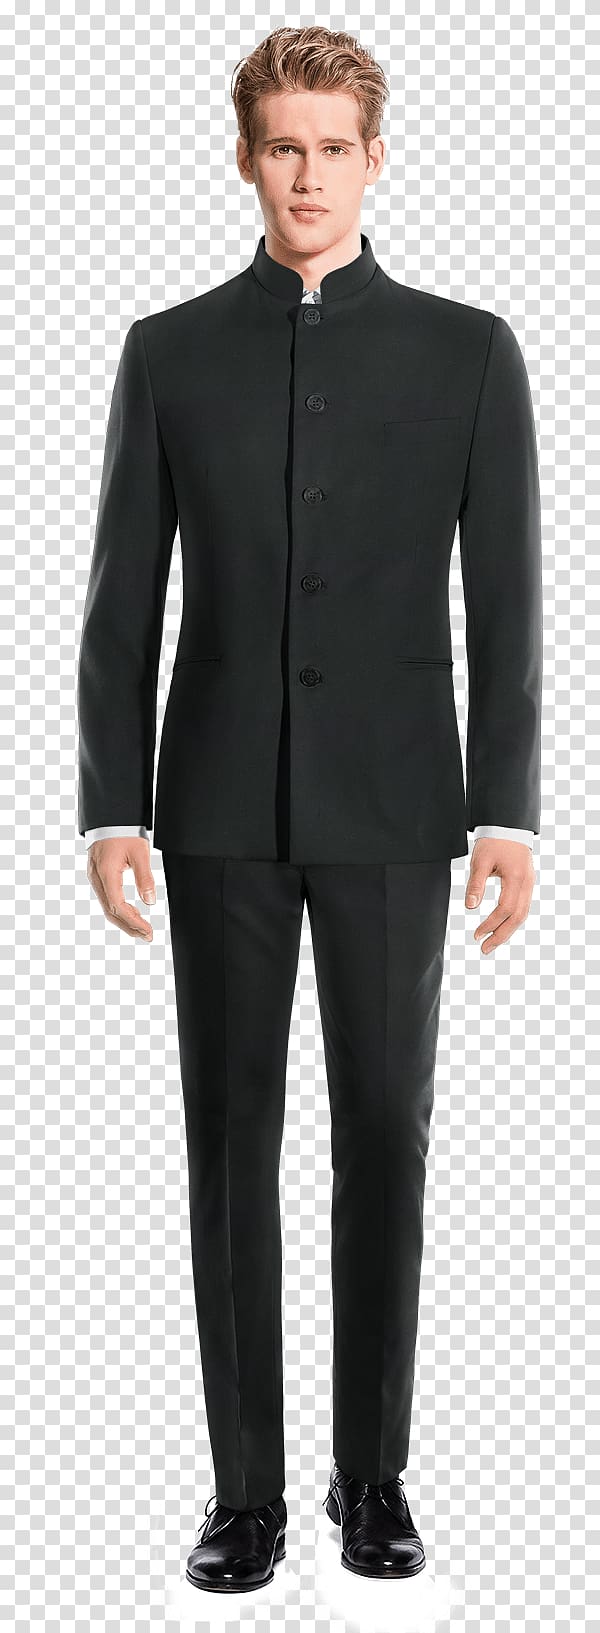 Tweed Pant Suits Tuxedo Pants, suit transparent background PNG clipart